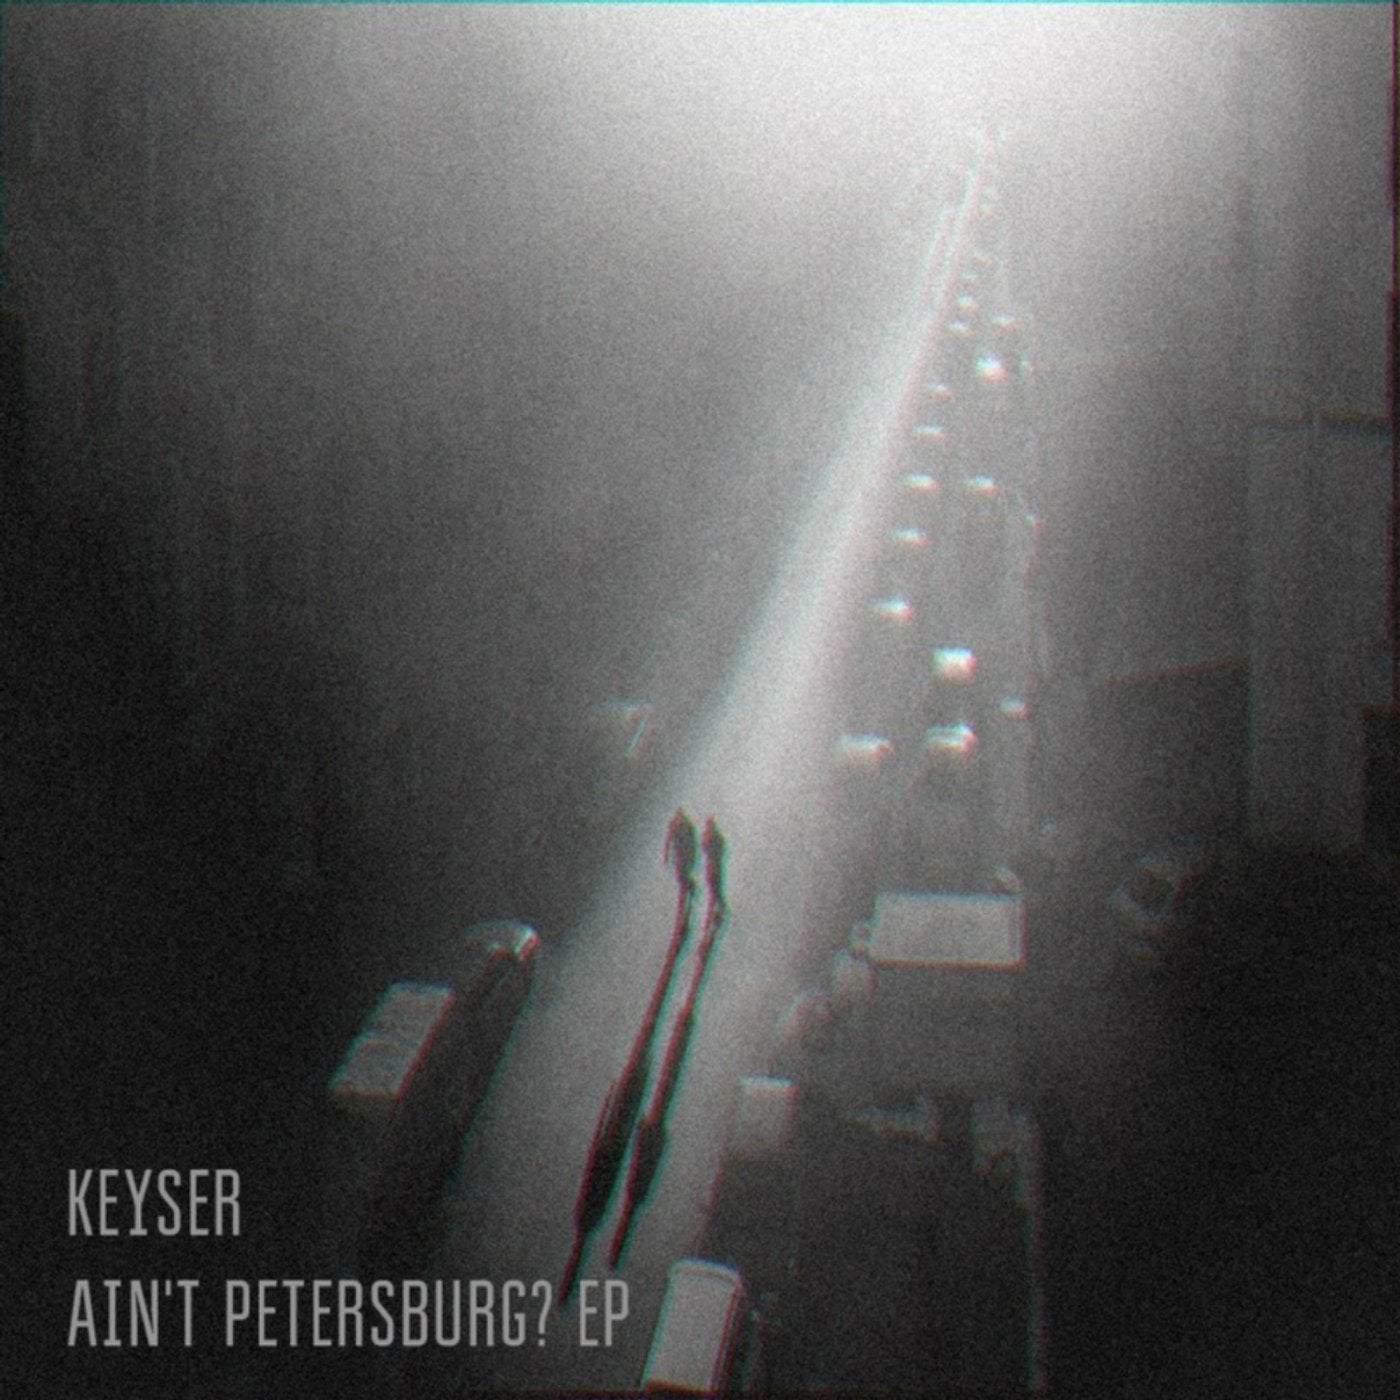 Ain't Petersburg